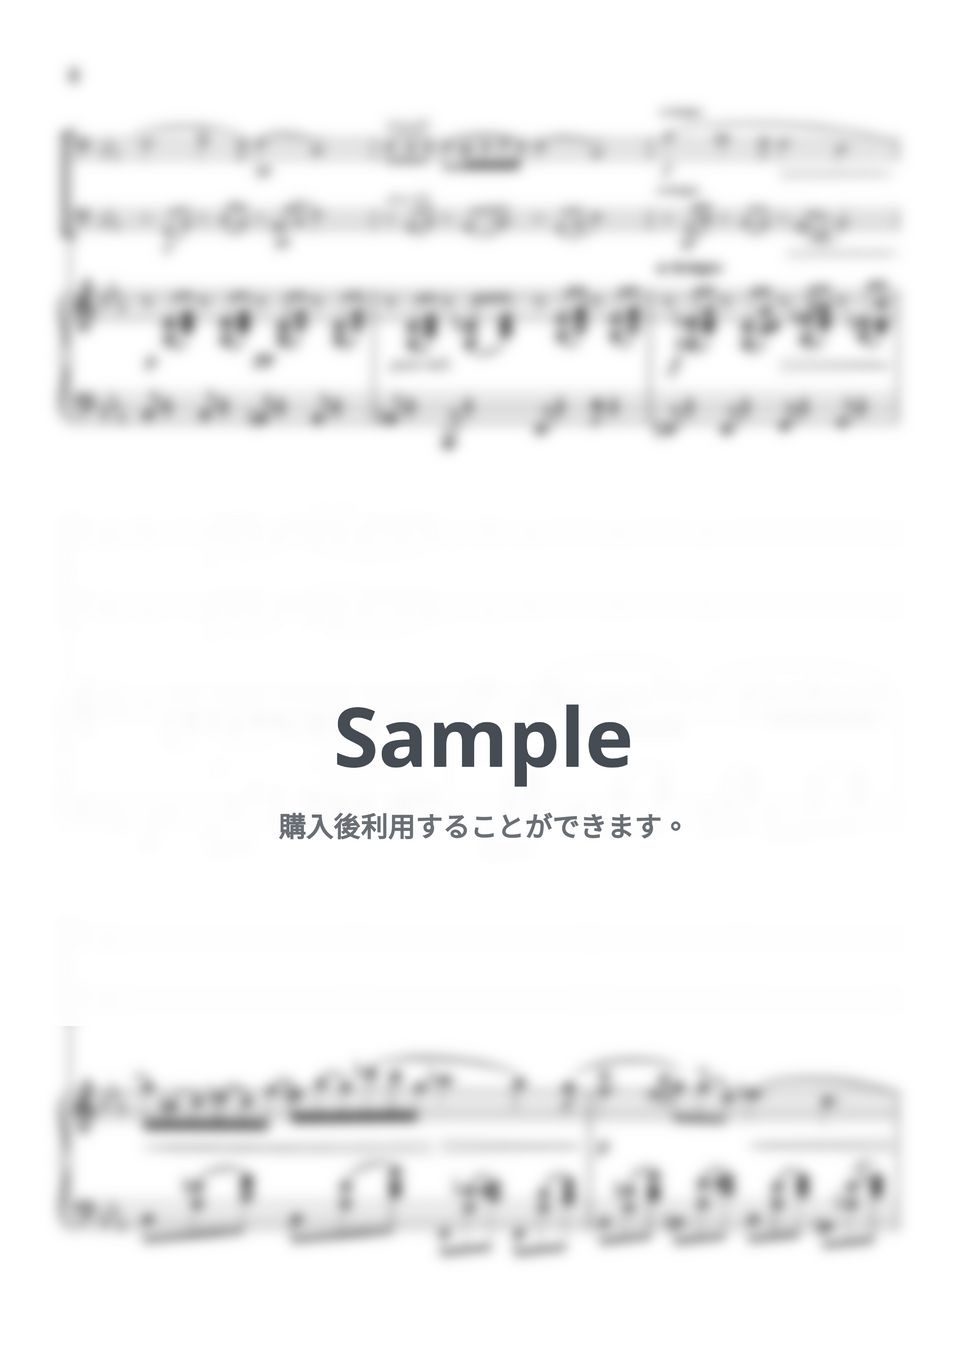 ショパン - ノクターン第2番 (ピアノトリオ/チェロデュオ) by pfkaori